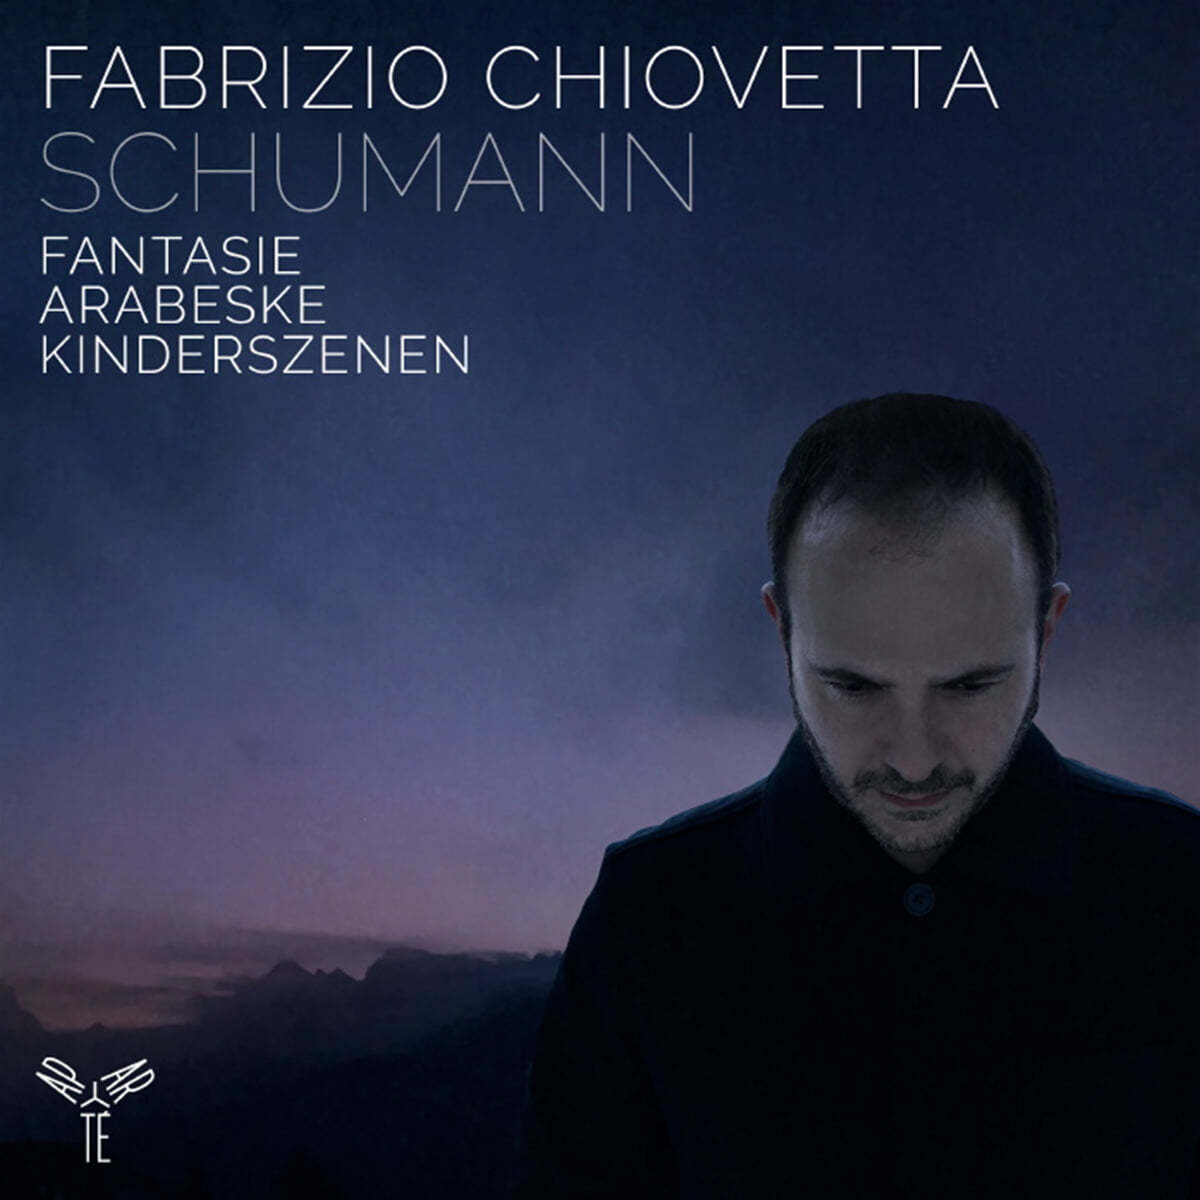 Fabrizio Chiovetta 슈만: 환상곡, 아라베스크, 어린이 정경 (Schumann: Fantasie Op.17, Arabeske Op.18, Kinderszenen Op.15)